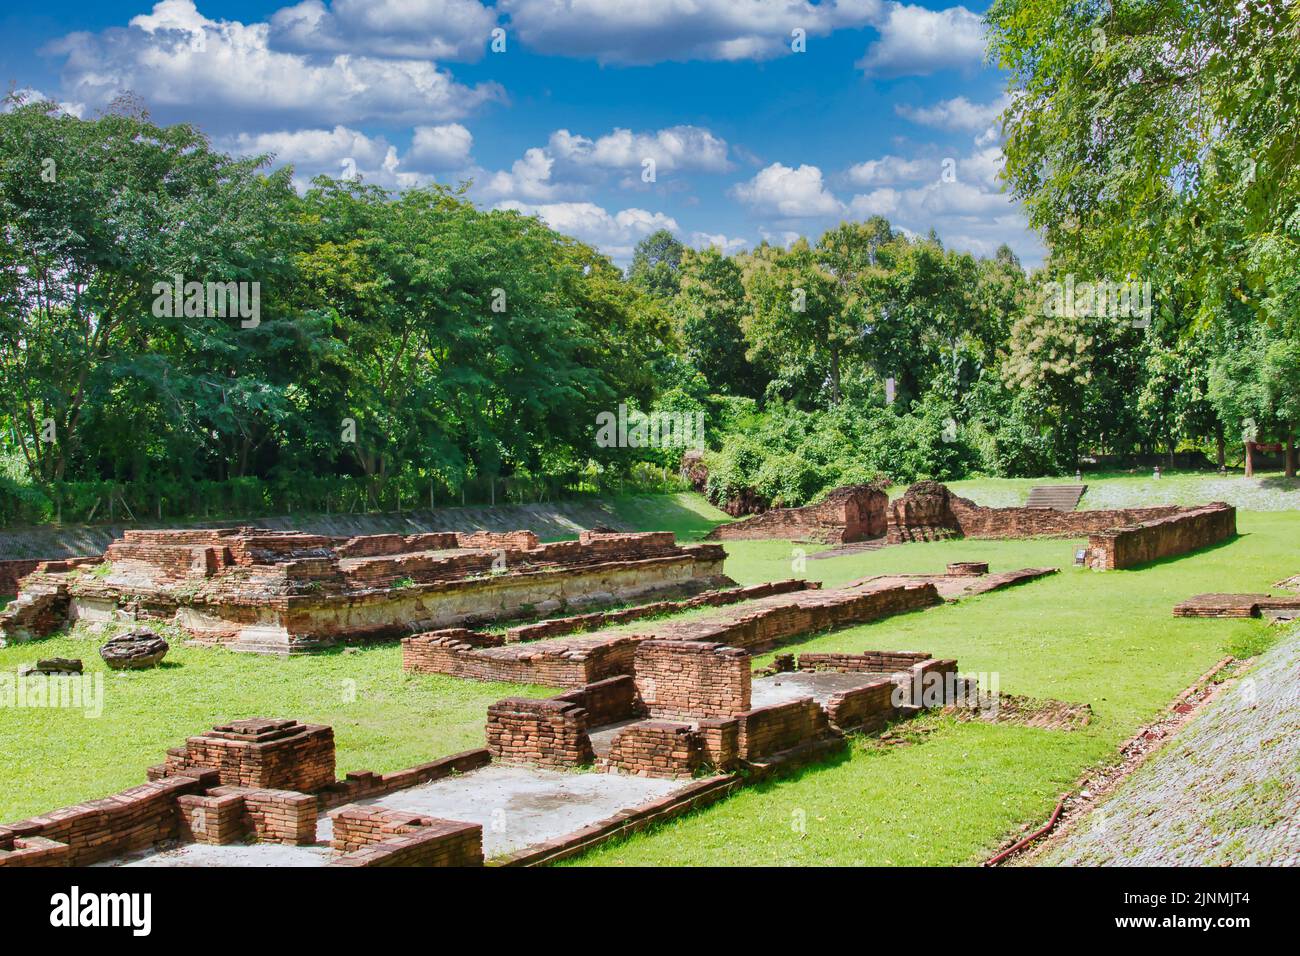 Rovine del tempio in mattoni scavati nel sito archeologico di Wiang Kum Kam, Chiang mai, Thailandia. Foto Stock